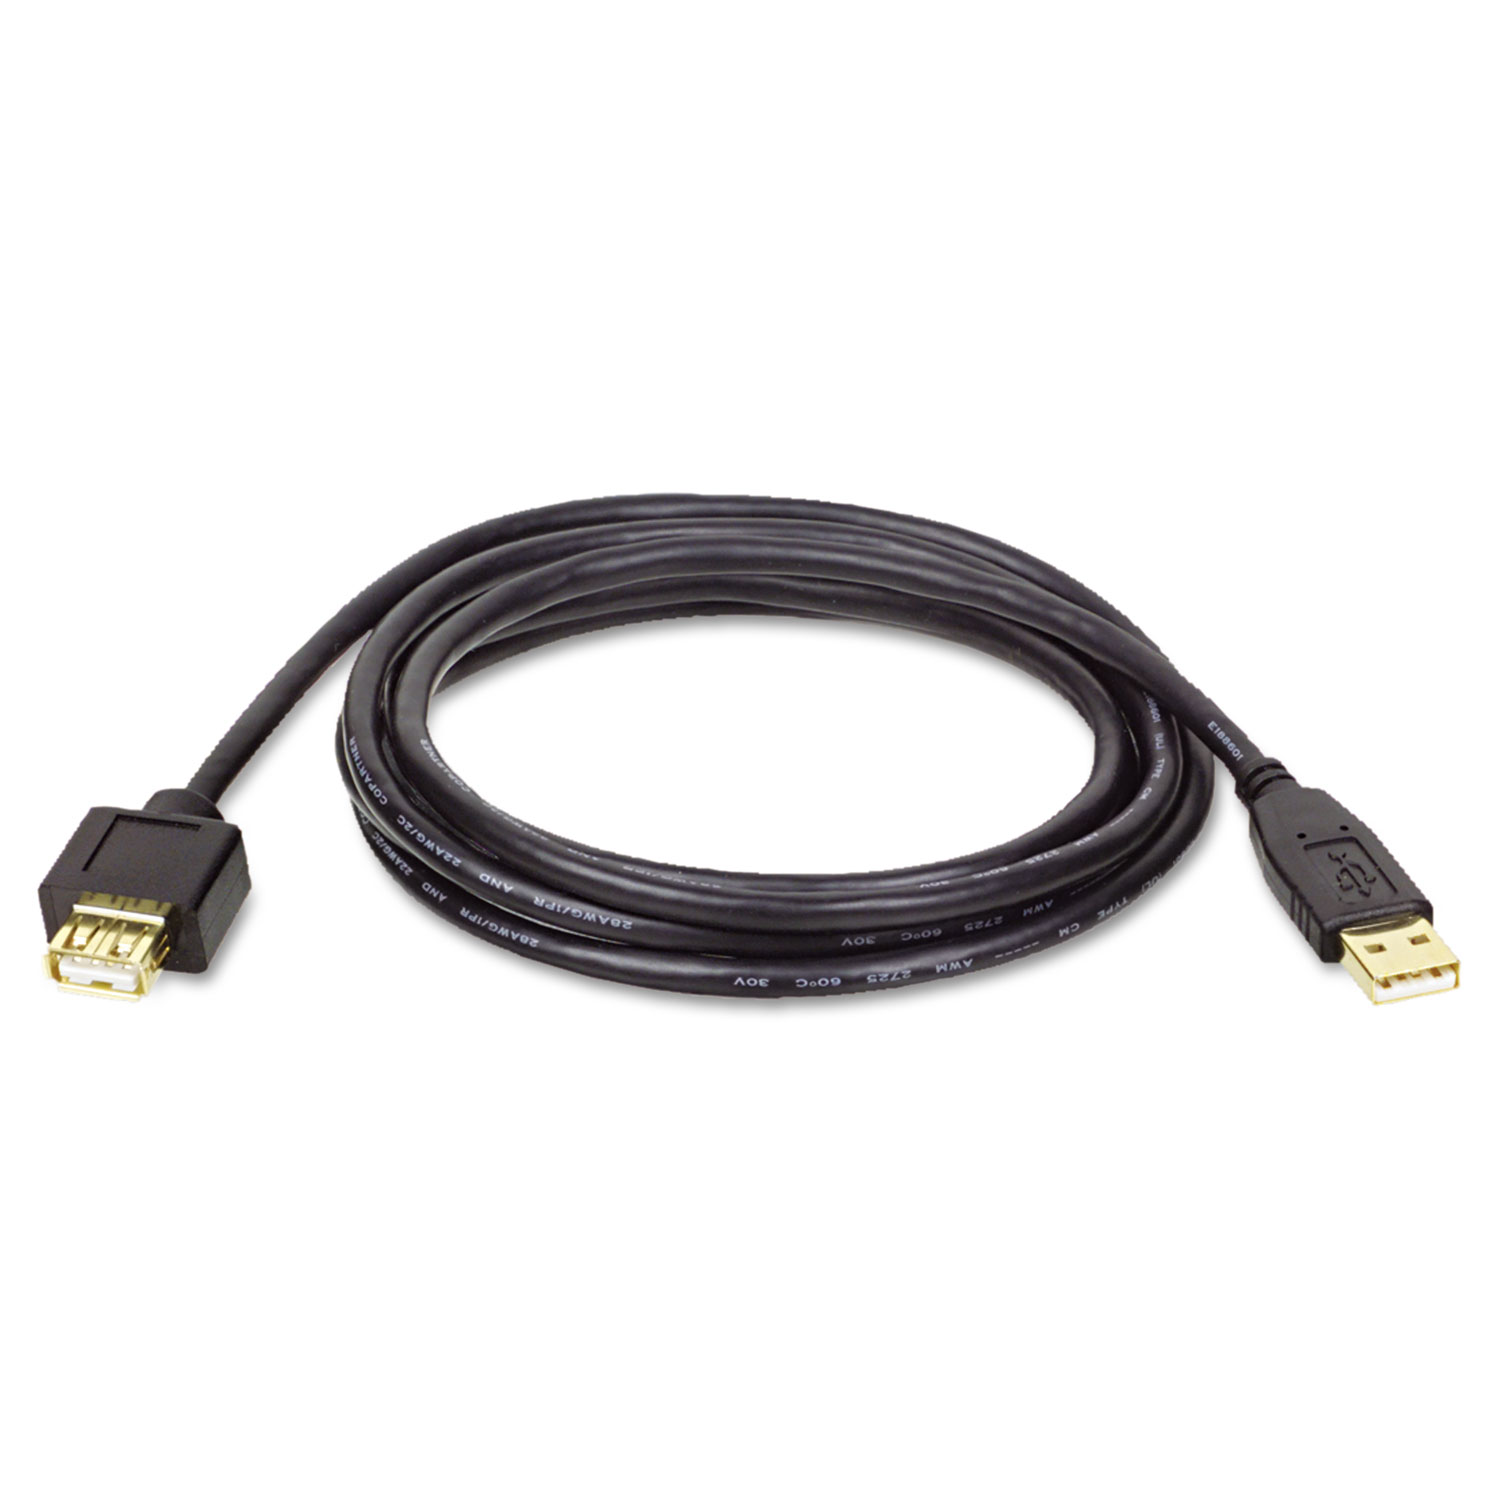  Tripp Lite U024-010 USB 2.0 A Extension Cable (M/F), 10 ft., Black (TRPU024010) 